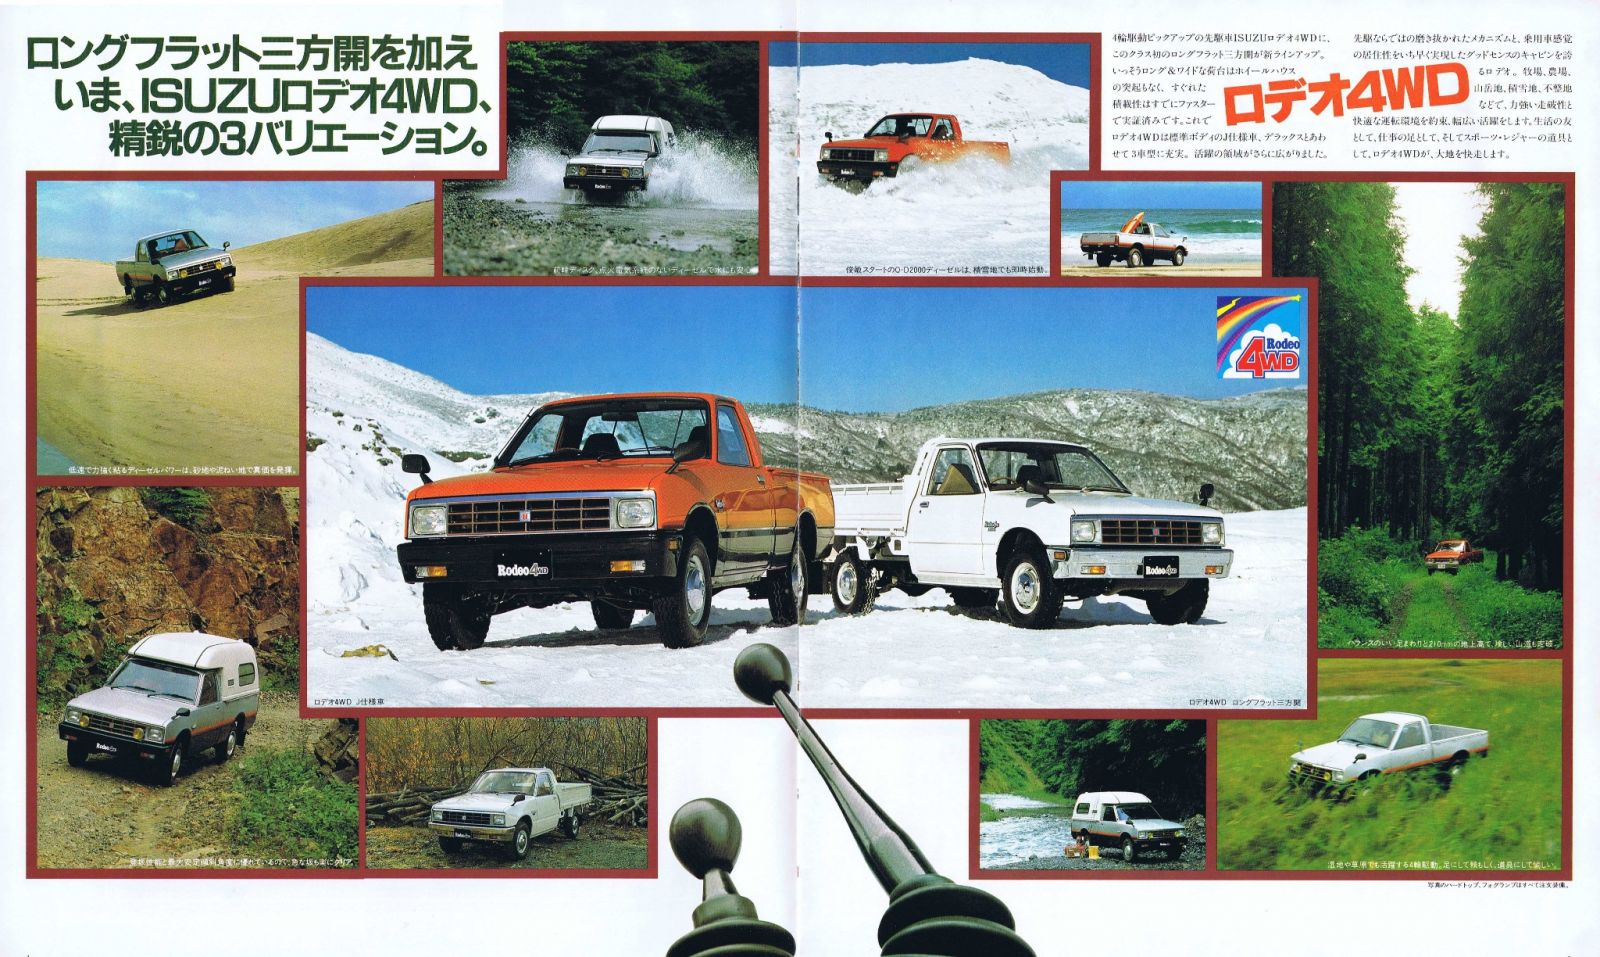 Isuzu Rodeo 4WD N-KBD41 & N-KBD46_02-03.JPG